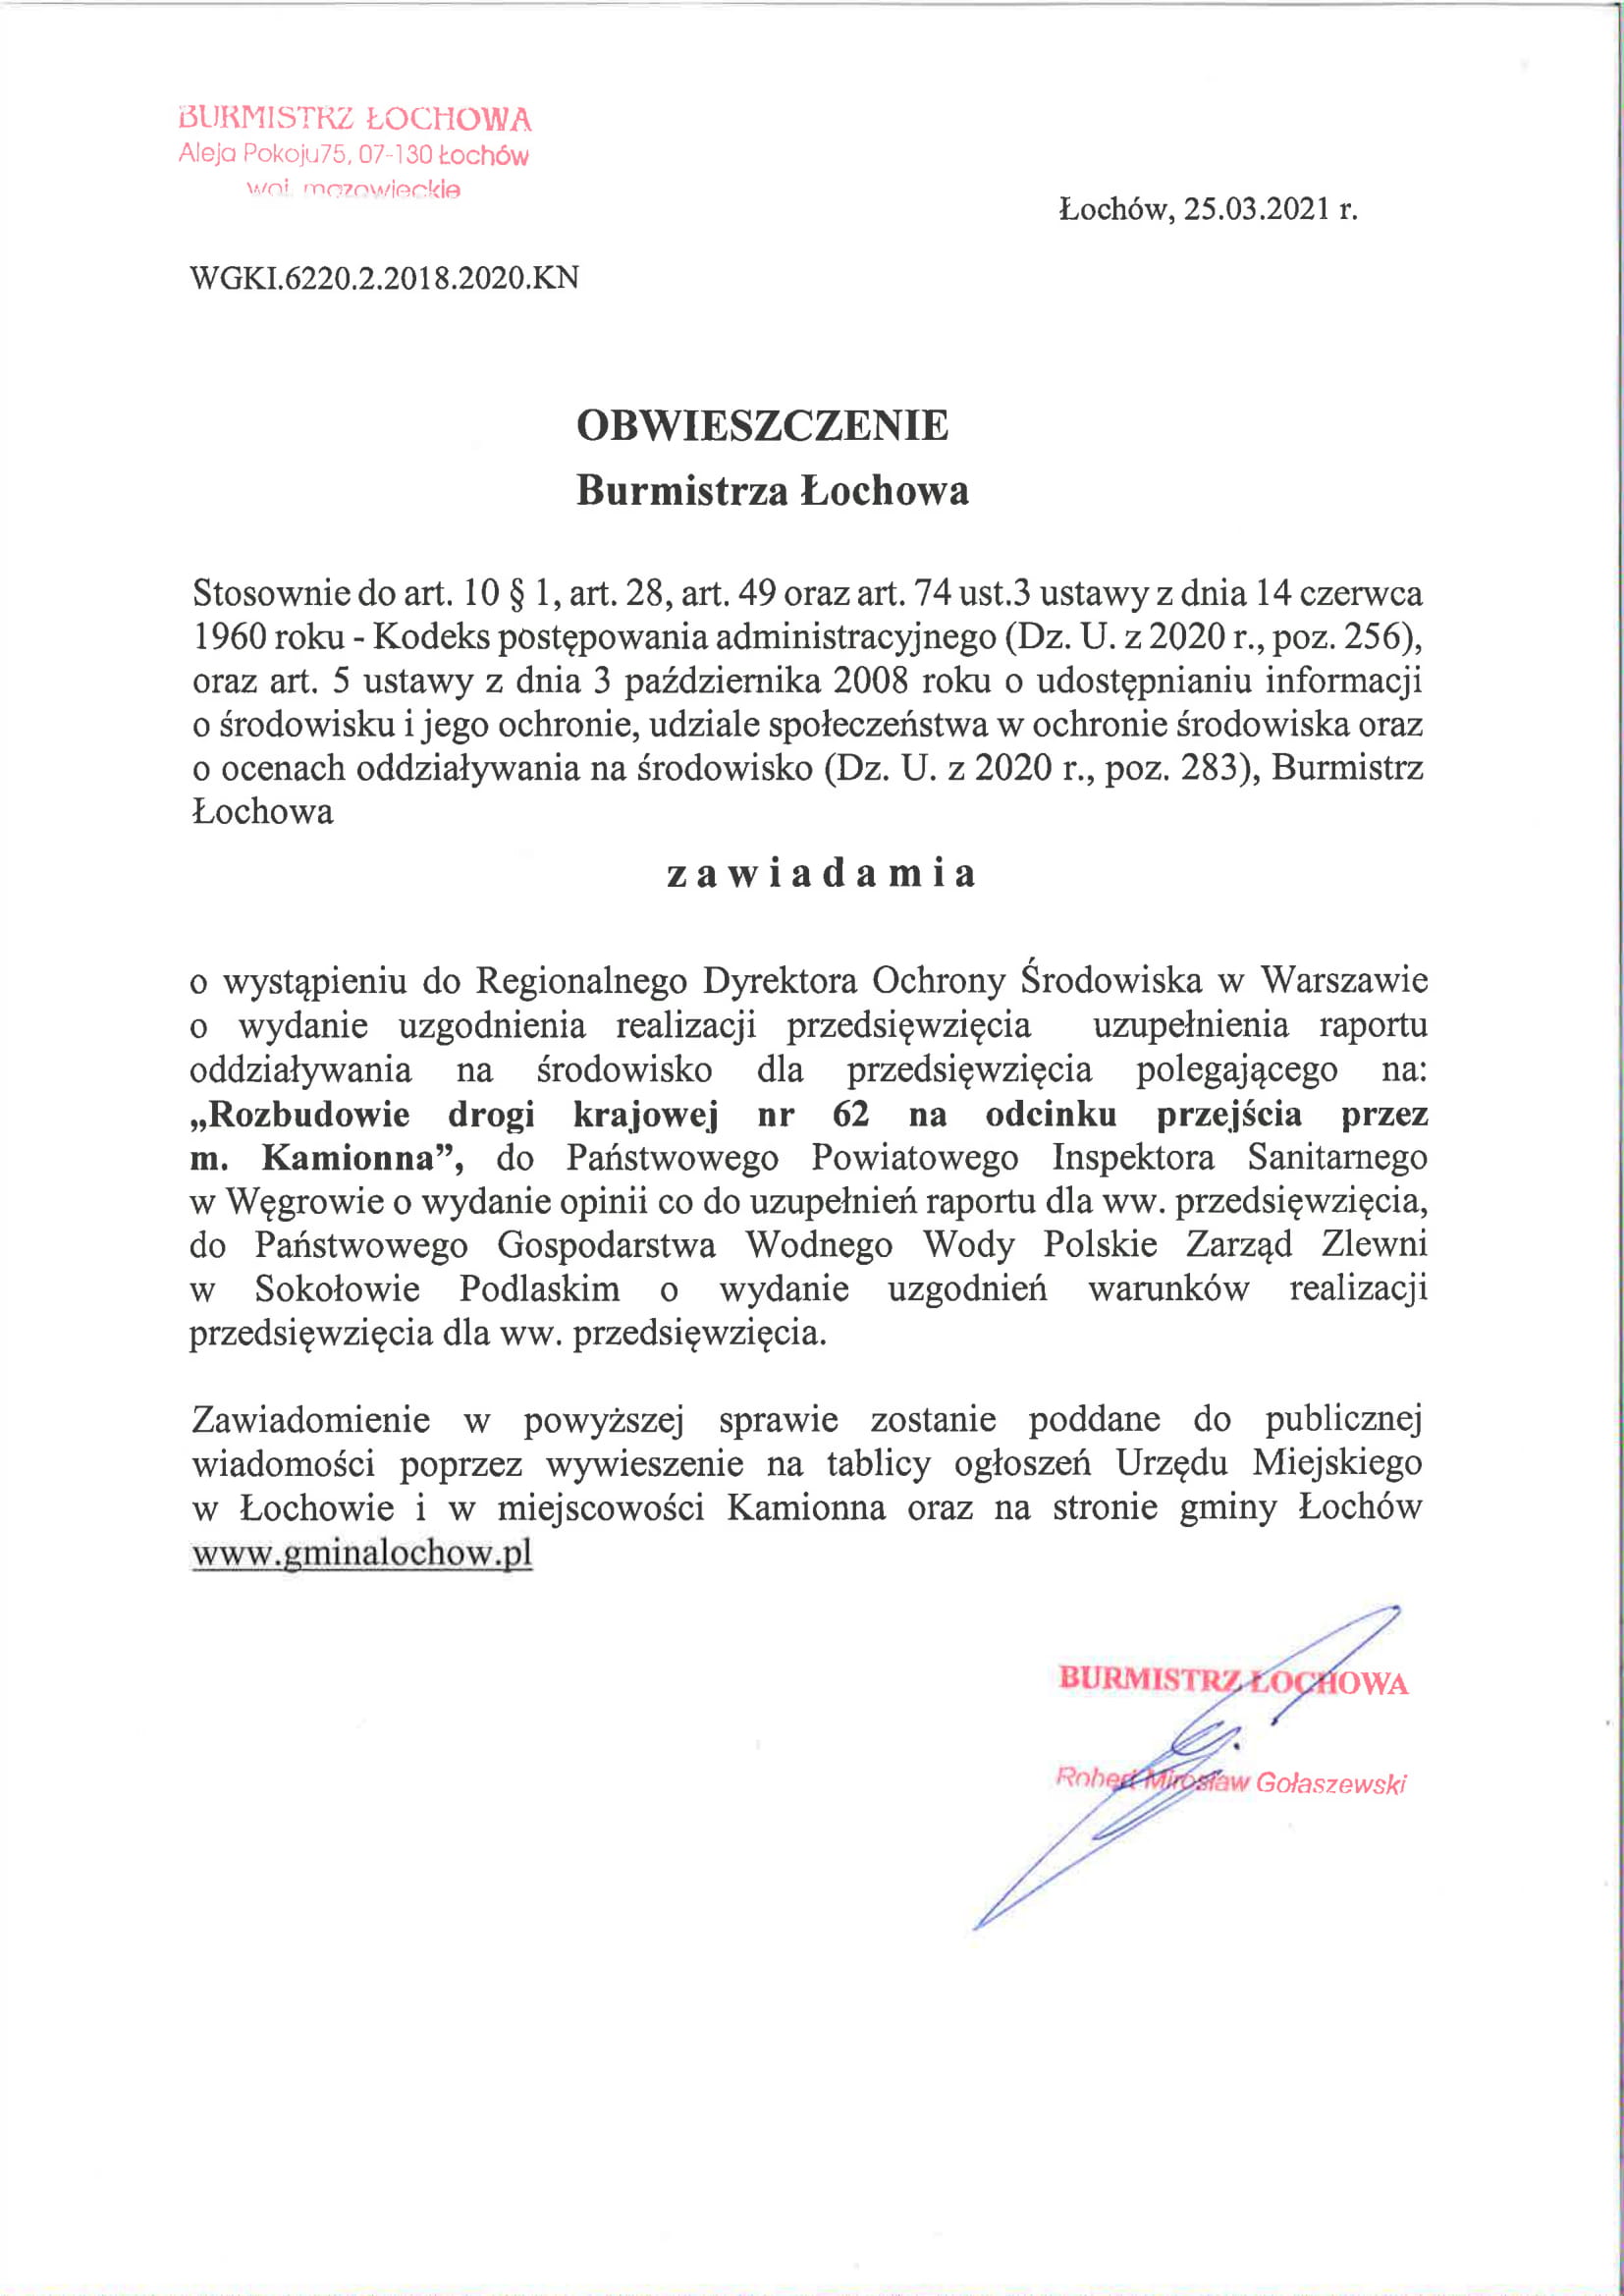 Obwieszczenie Burmistrza Łochowa z dnia 25.03.2021 roku